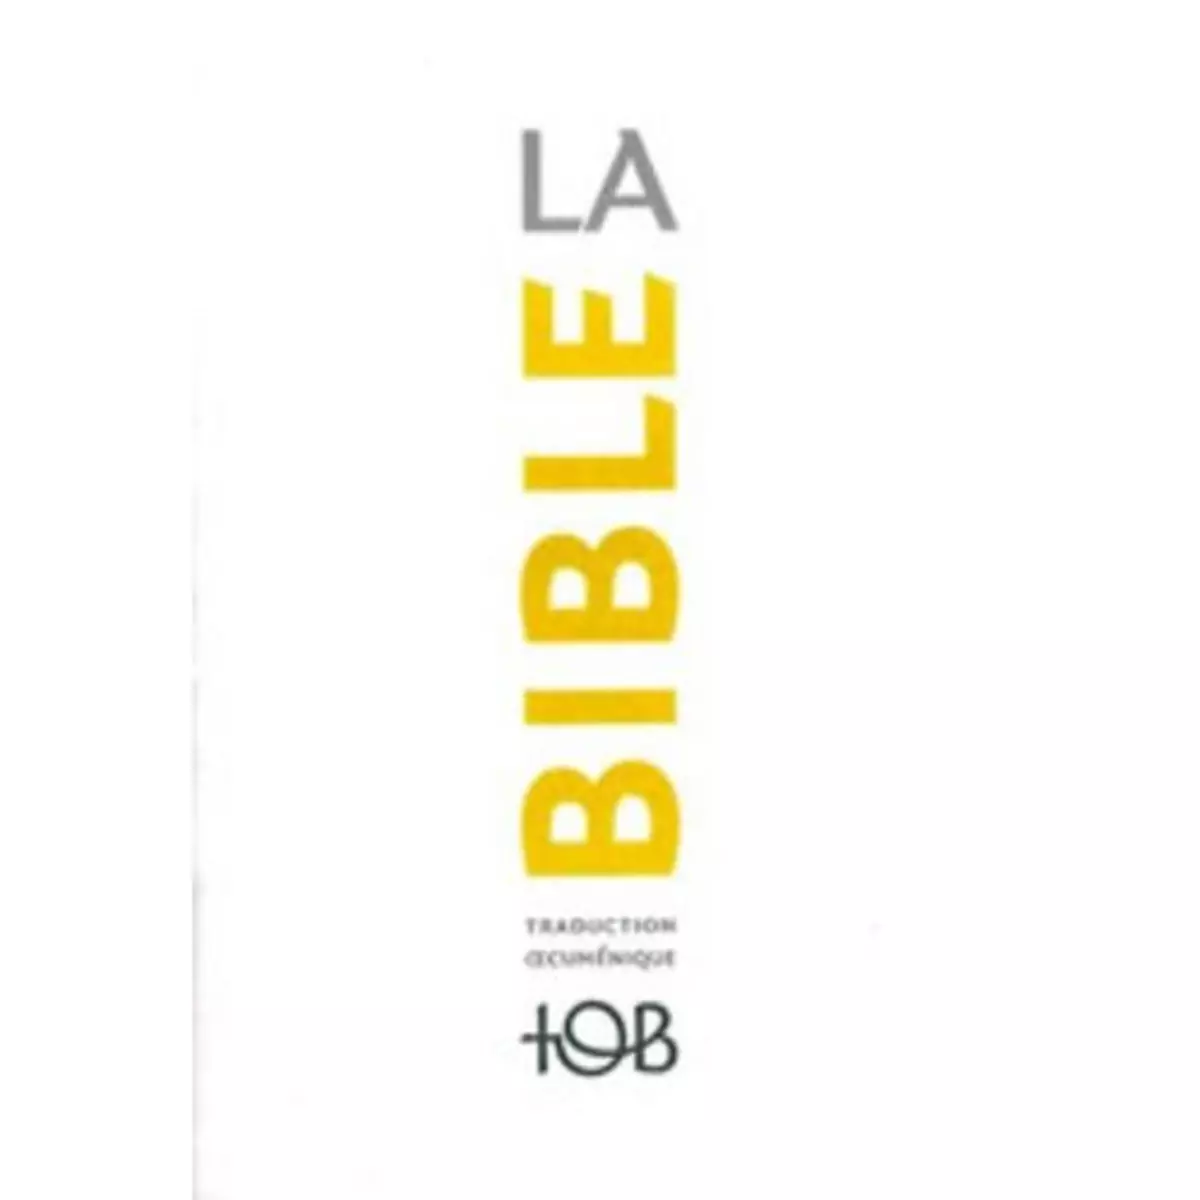  LA BIBLE TOB. TRADUCTION OECUMENIQUE AVEC INTRODUCTIONS, NOTES ESSENTIELLES, GLOSSAIRE, Éditions du Cerf